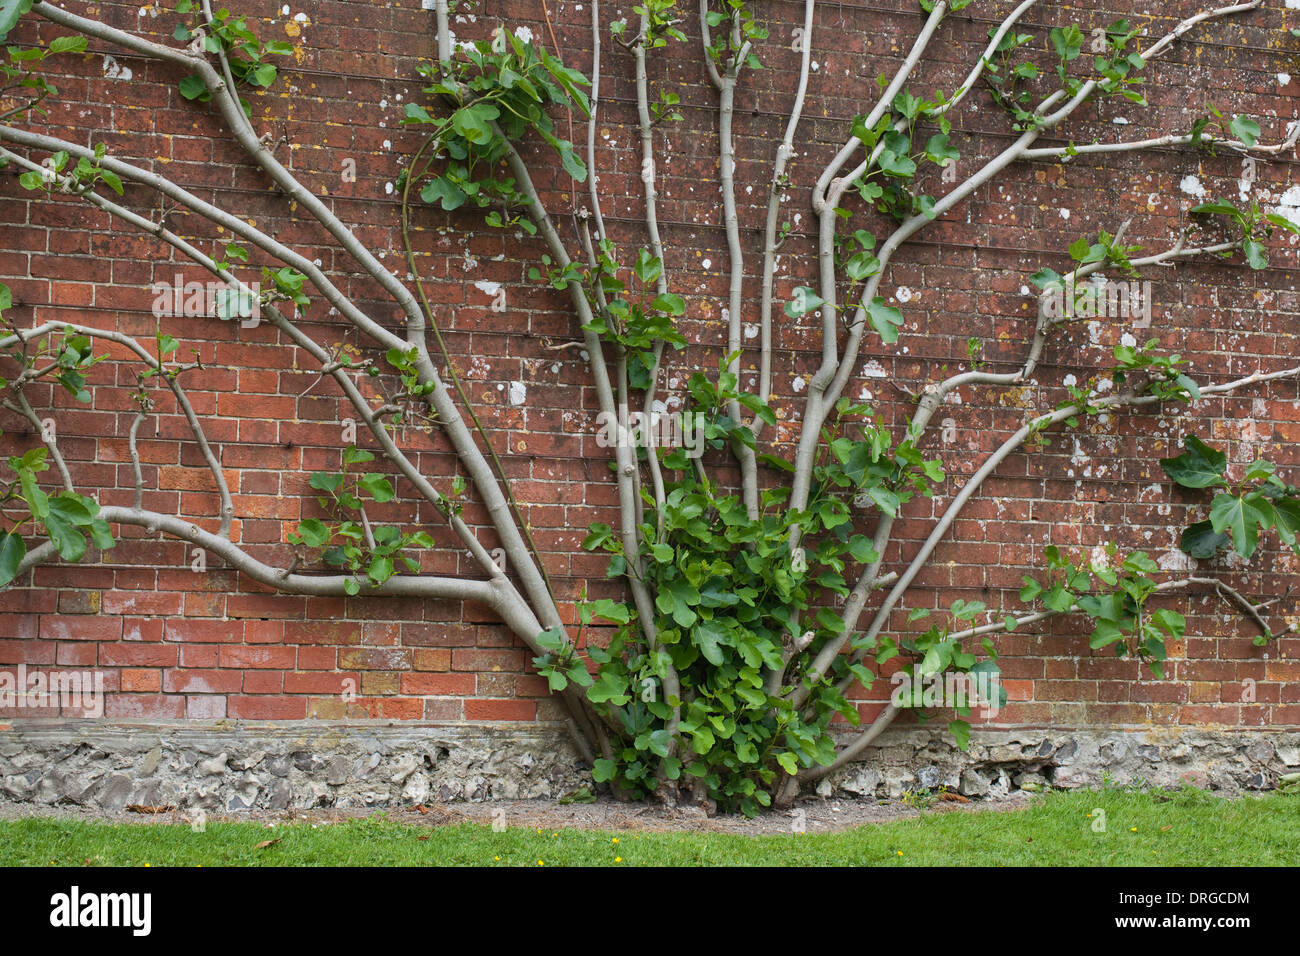 Higuera (Ficus caria). Creciendo en una finca jardín amurallado. Varios troncos de una única raíz existencias, formado una pared. Foto de stock